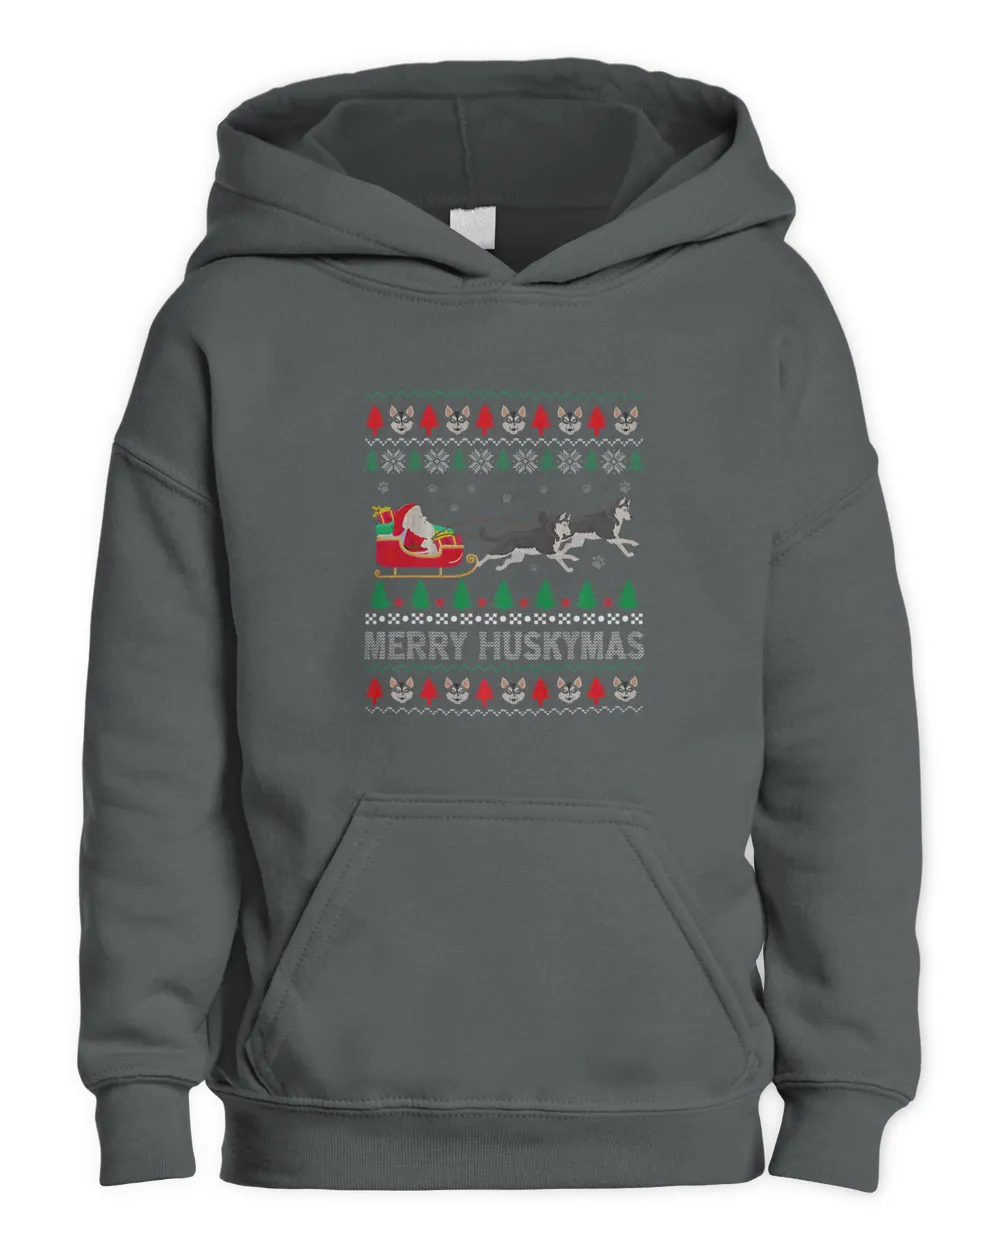 Merry Huskymas Siberian Husky Dogs Ugly Christmas Sweater 178